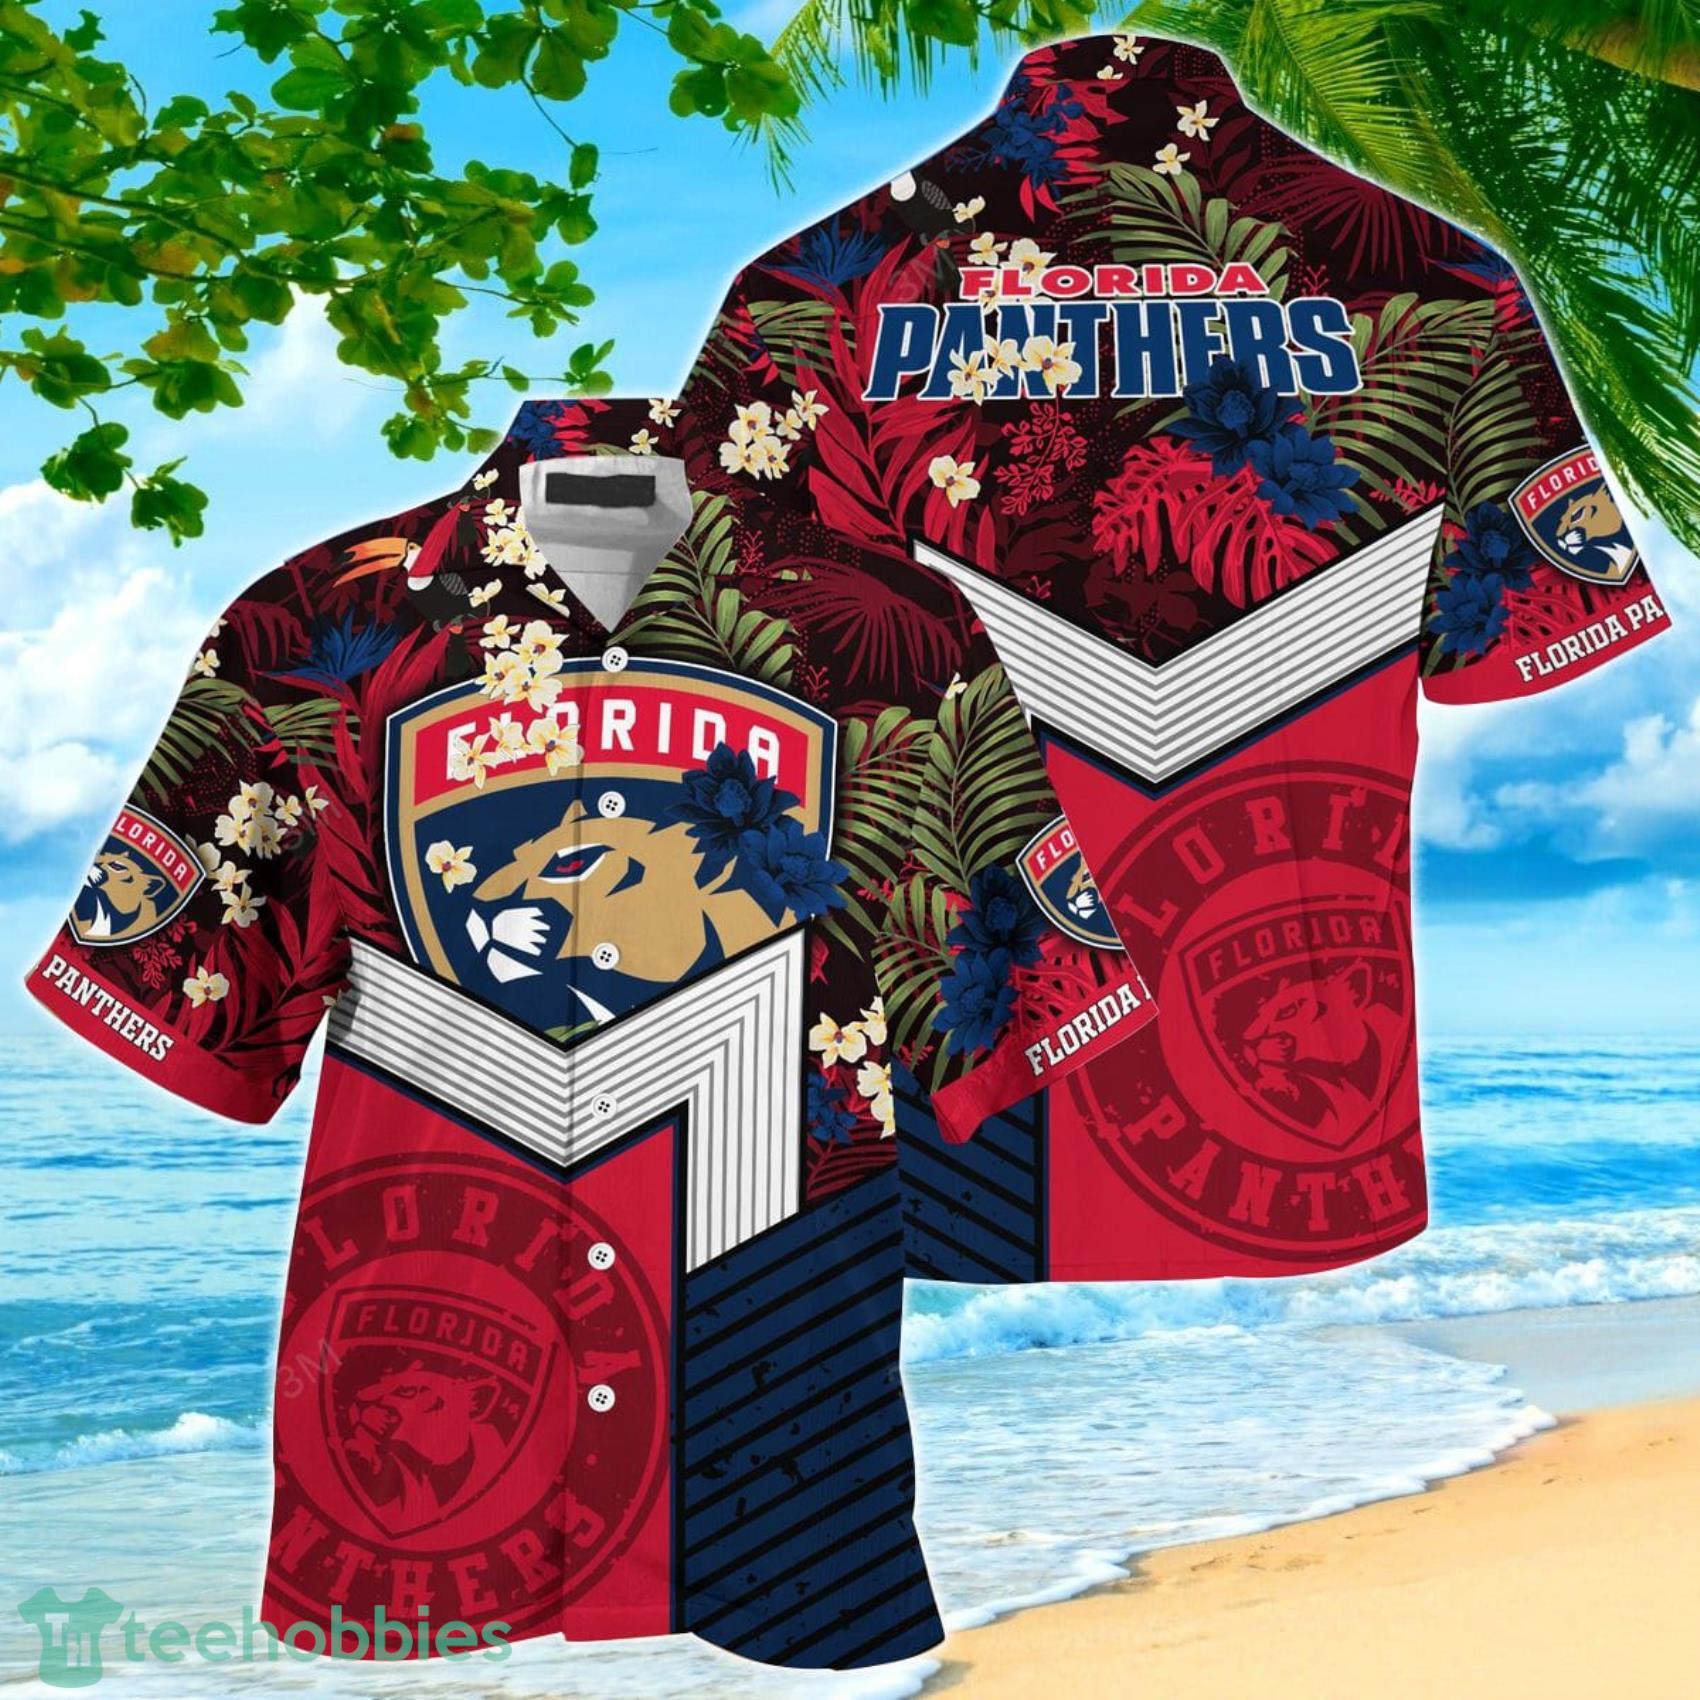 Florida Panthers Hawaiian Shirt And Short - Tagotee